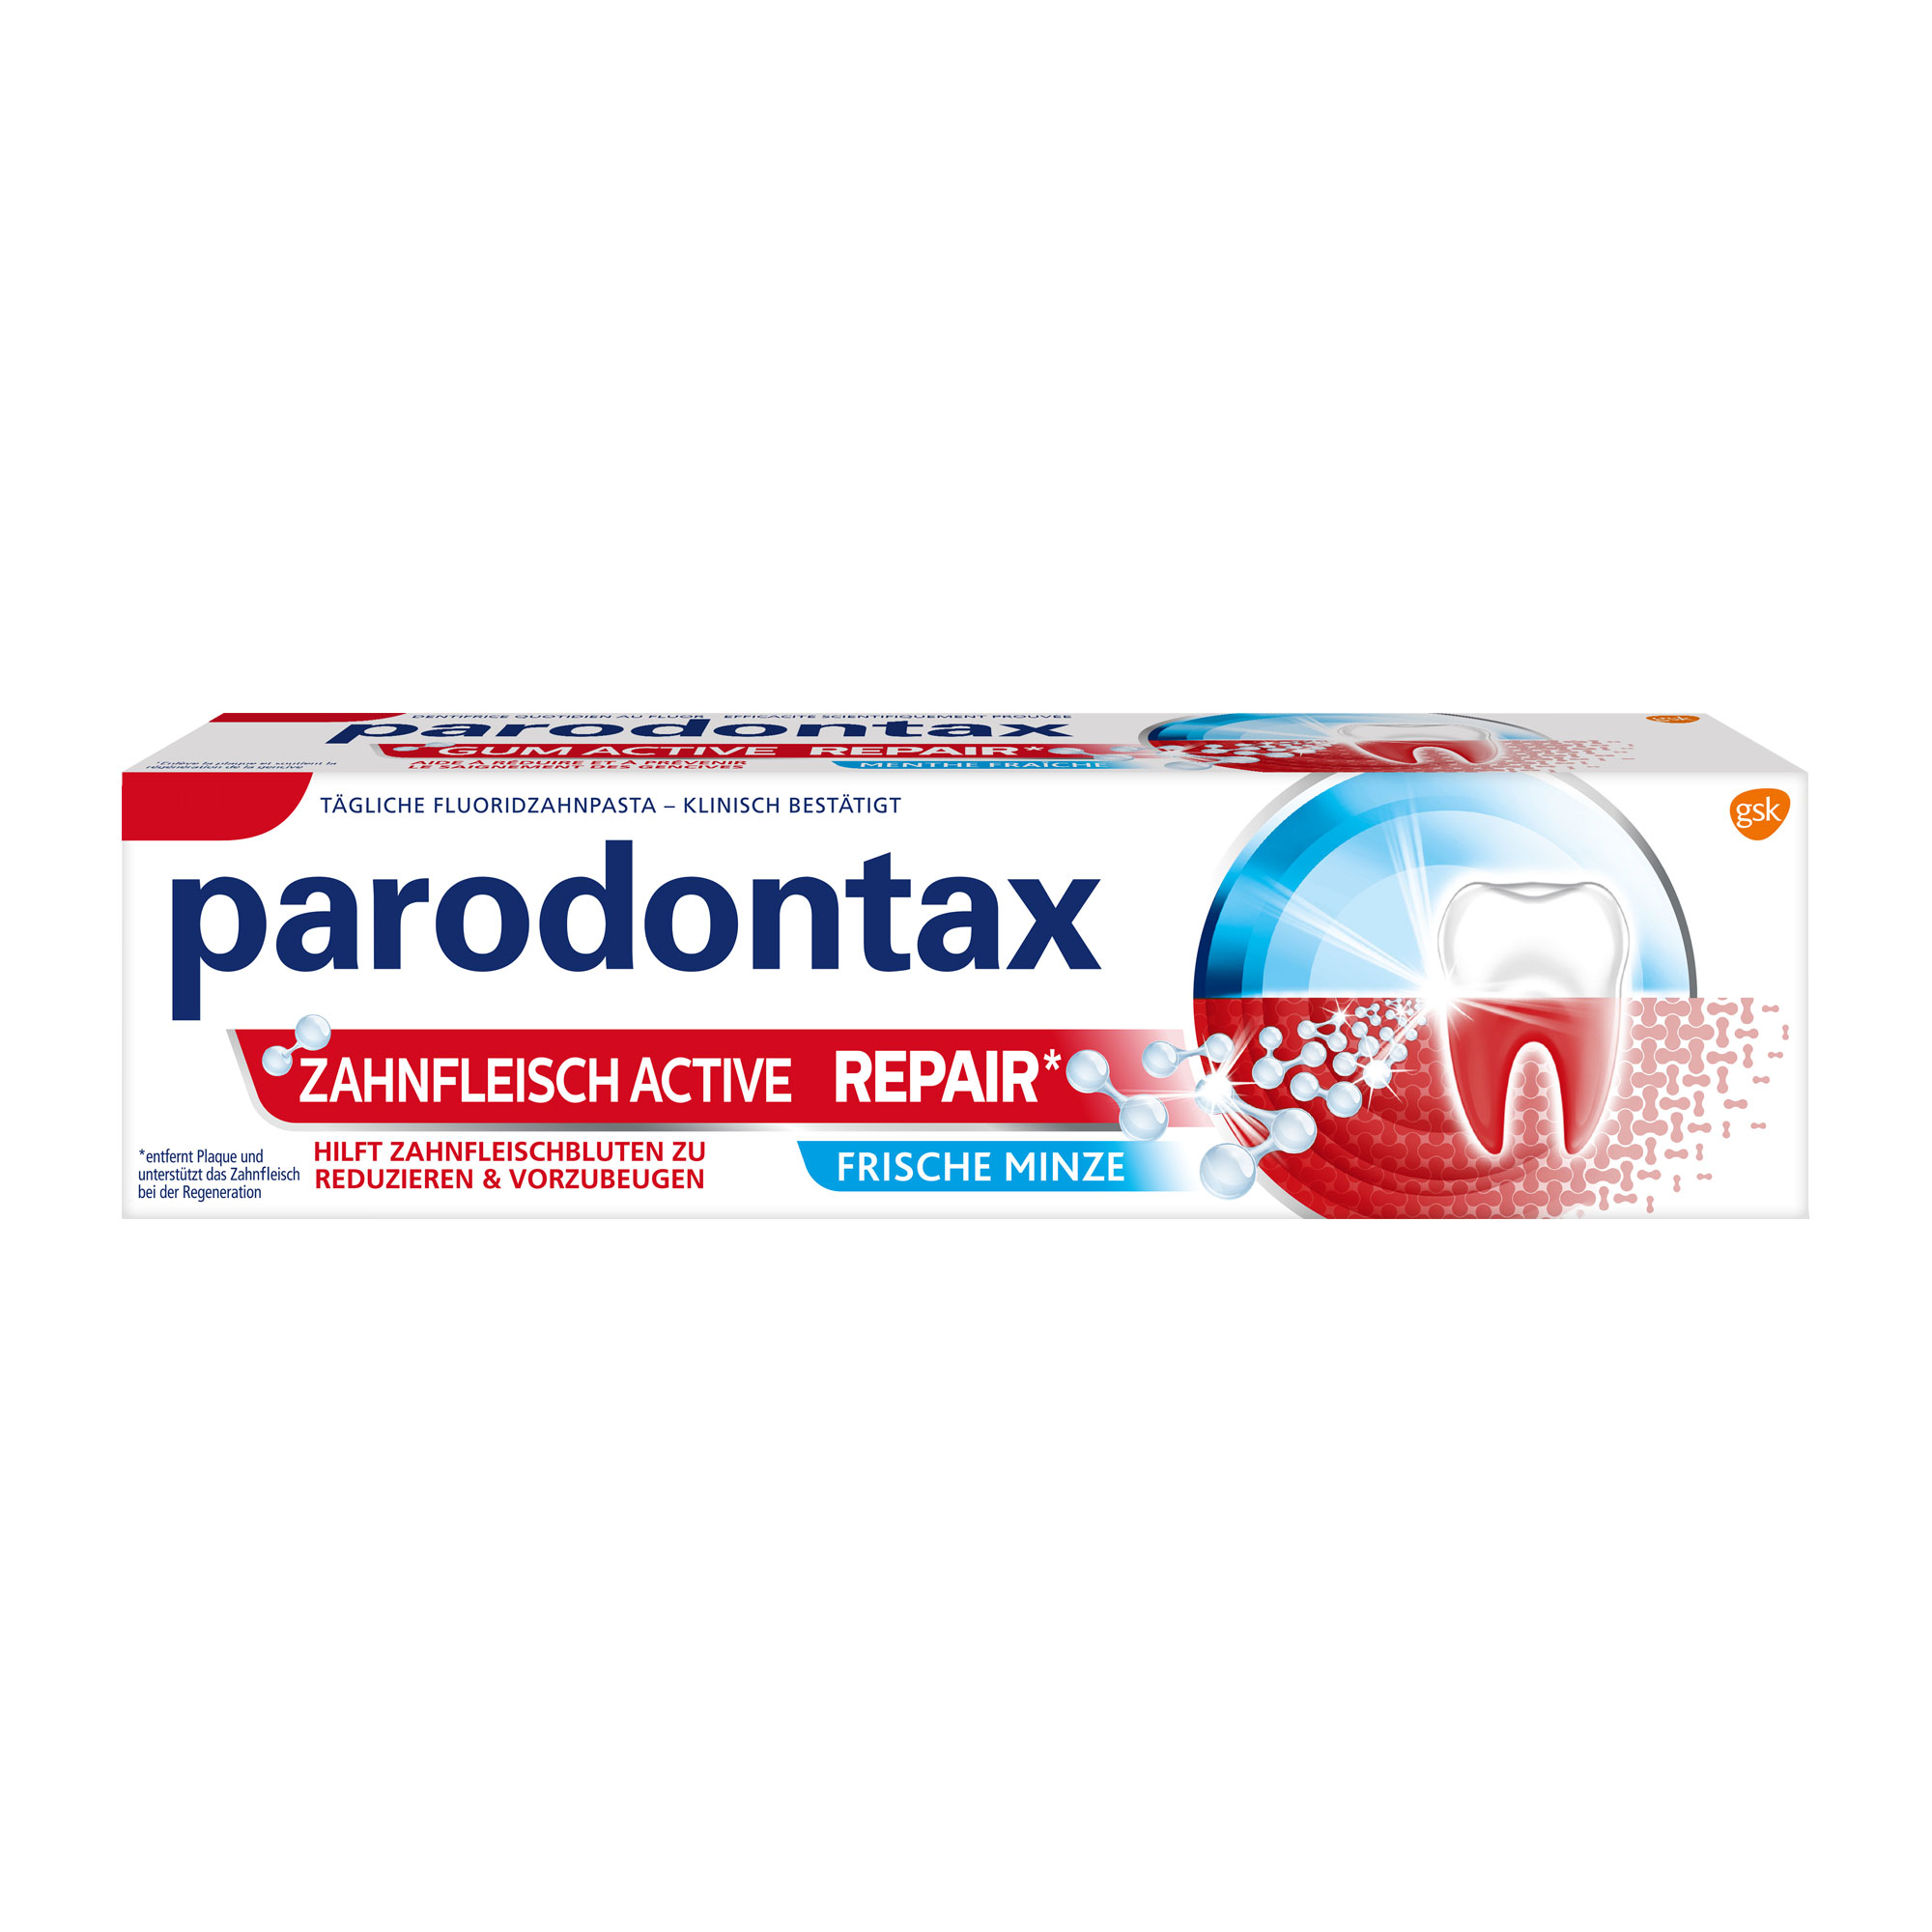 Parodontax Zahnfleisch Active Repair* Zahnpasta Verpackung